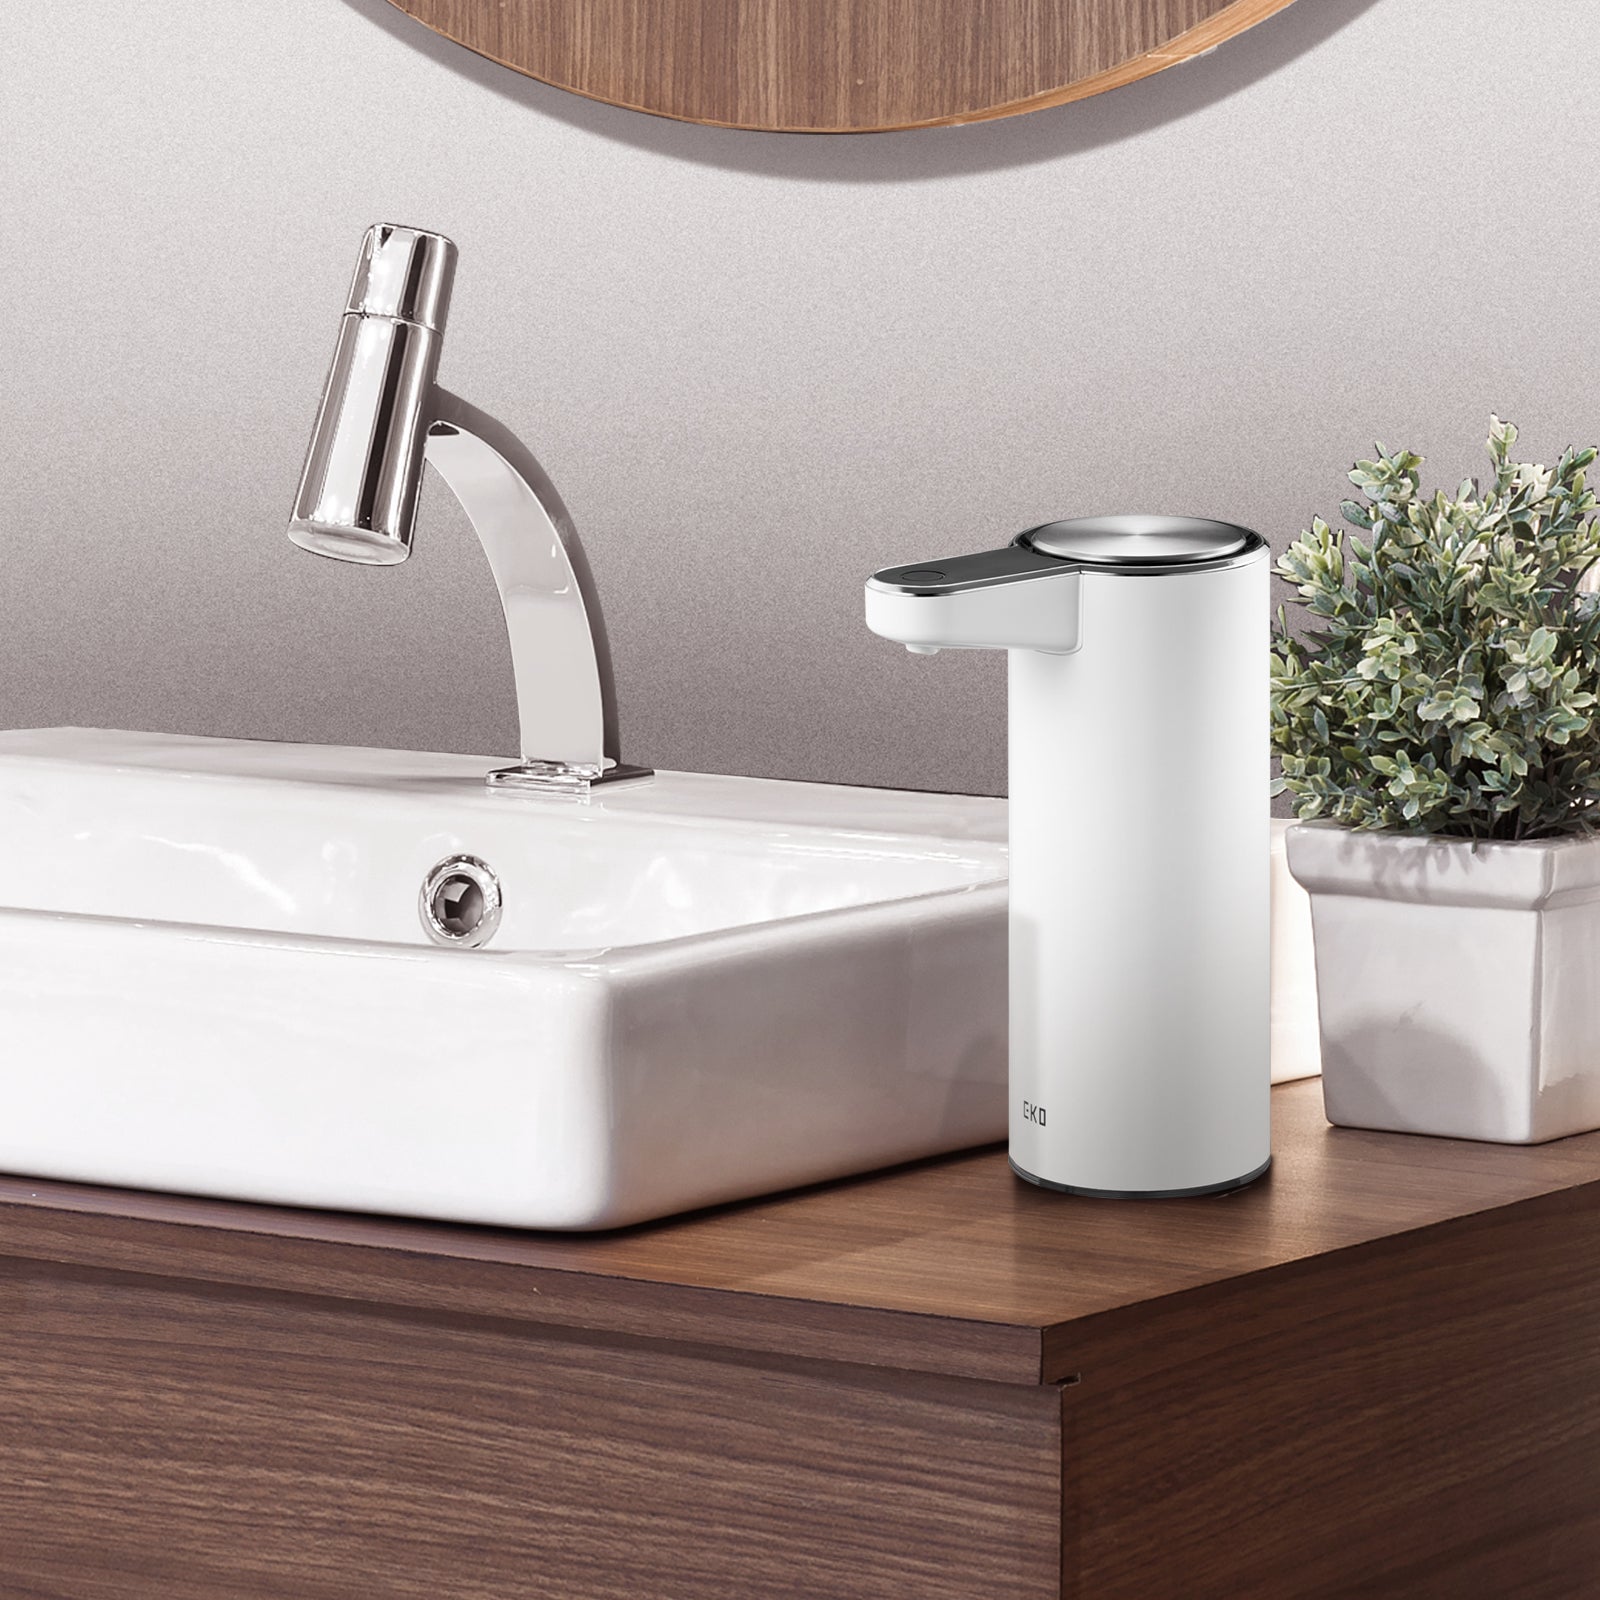 Deluxe Aroma Smart Liquid Soap Dispenser - Pearl White